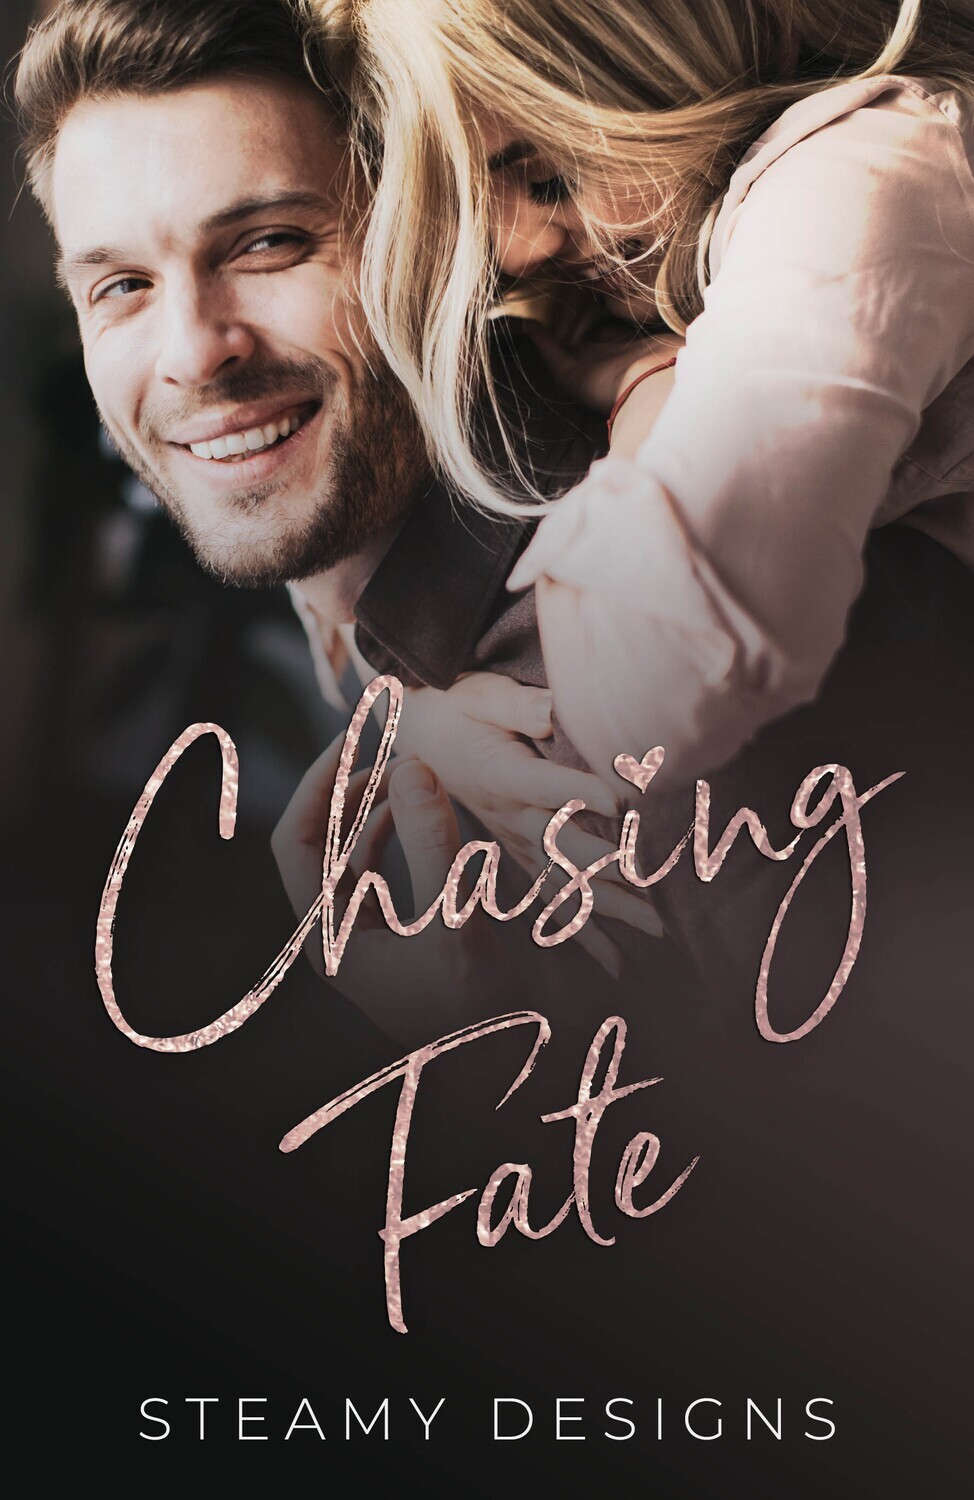 Chasing Fate - Premade E-book Cover